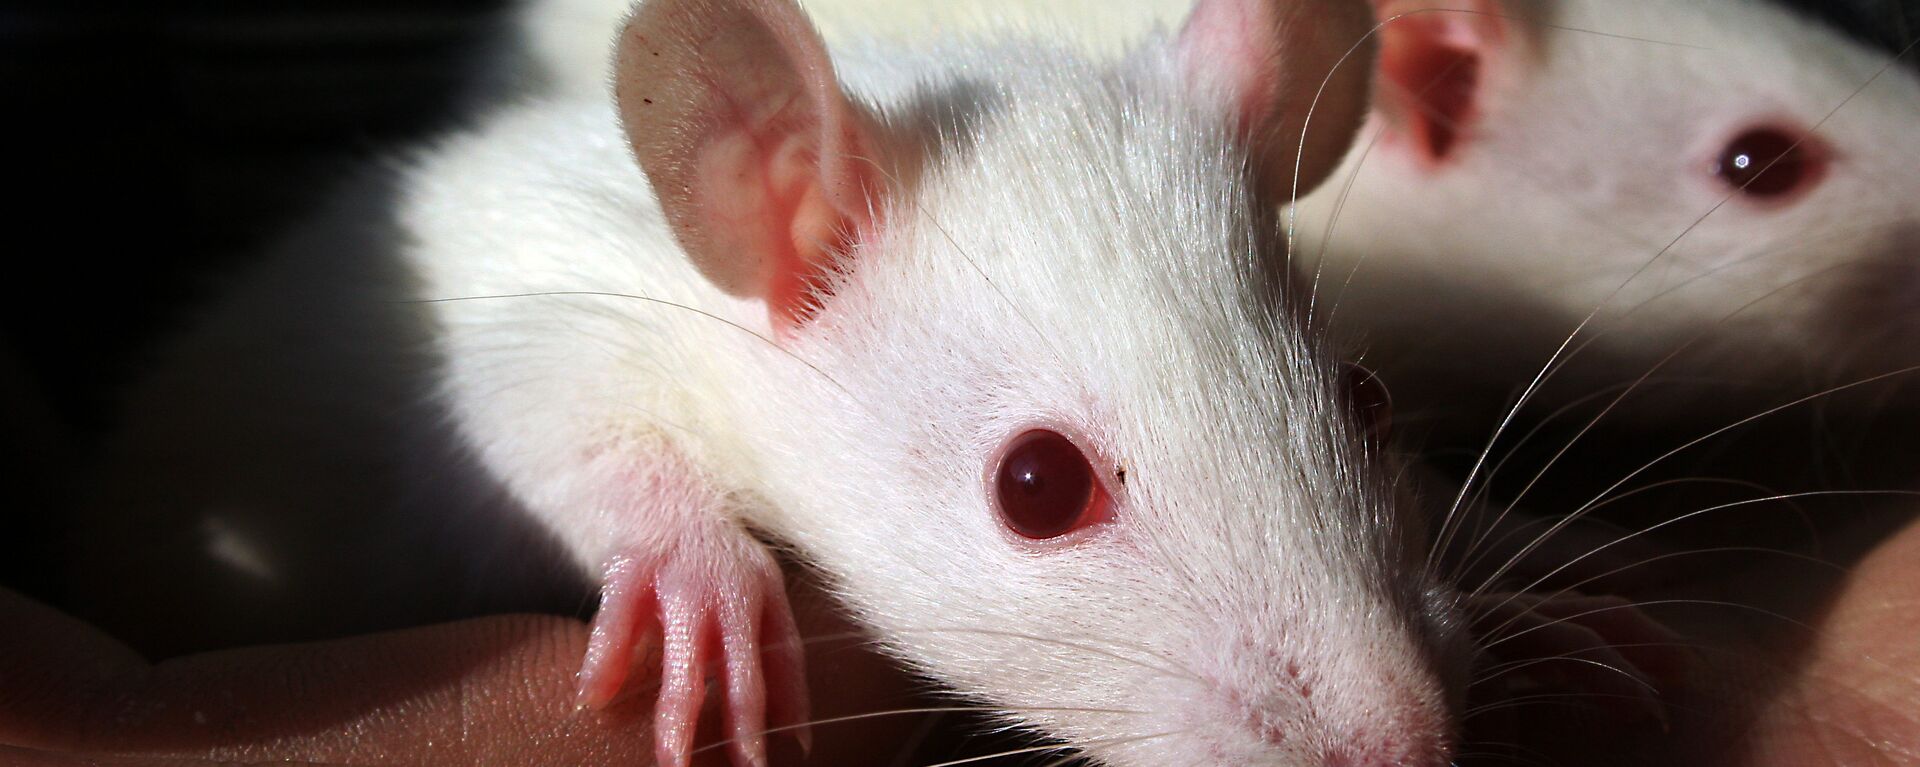 Utilizaron tres grupos de ratones divididos por edad: uno con ratones de dos meses, otro de 12 meses y otro de 18 meses.  - Sputnik Mundo, 1920, 09.12.2020